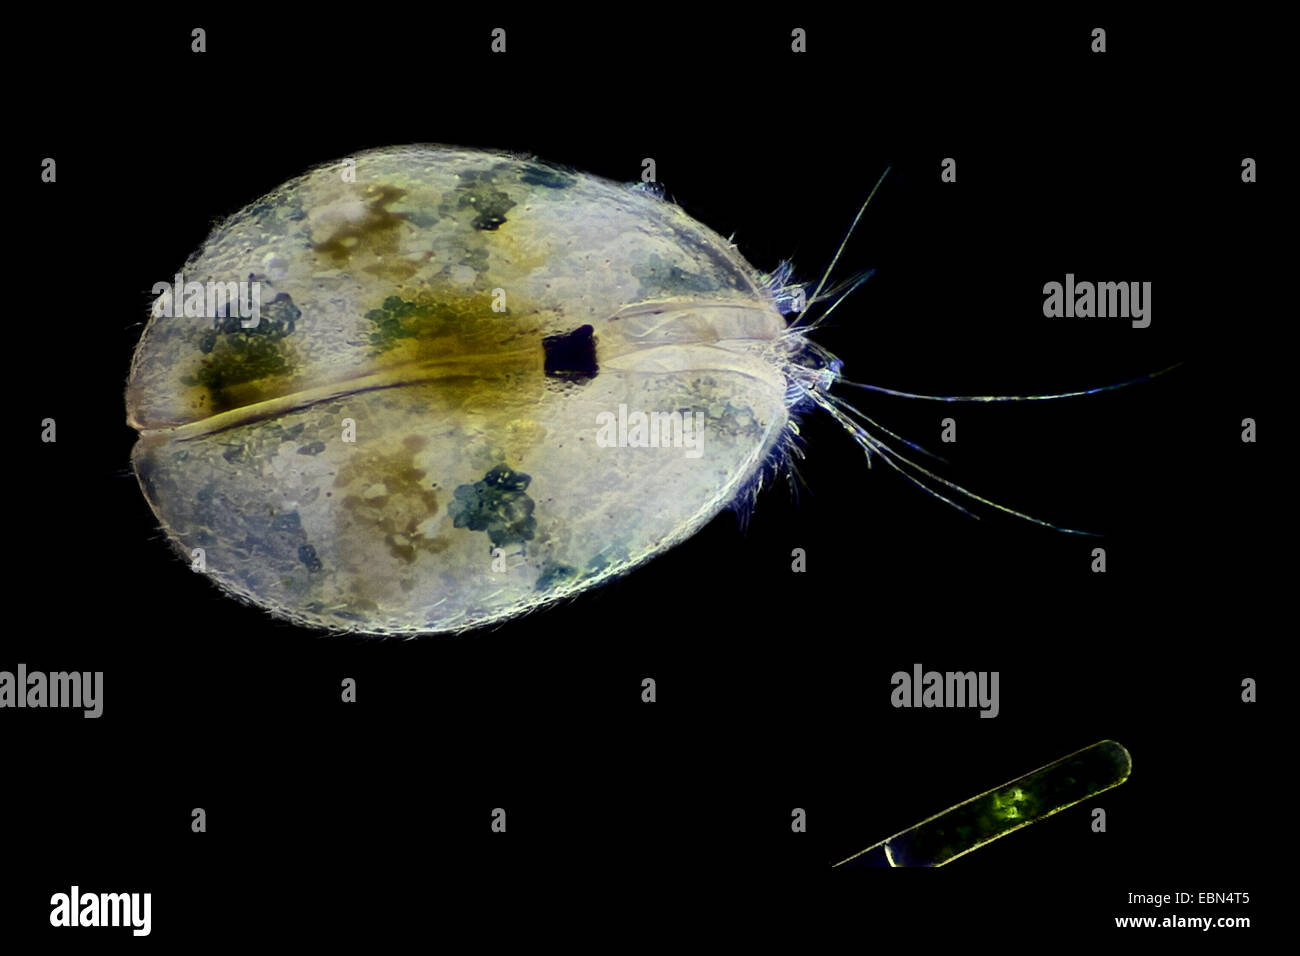 Muschelkrebsen, Schale bedeckt Krustentier, seed Garnelen (Ostracoda) im Dunkelfeld Stockfoto